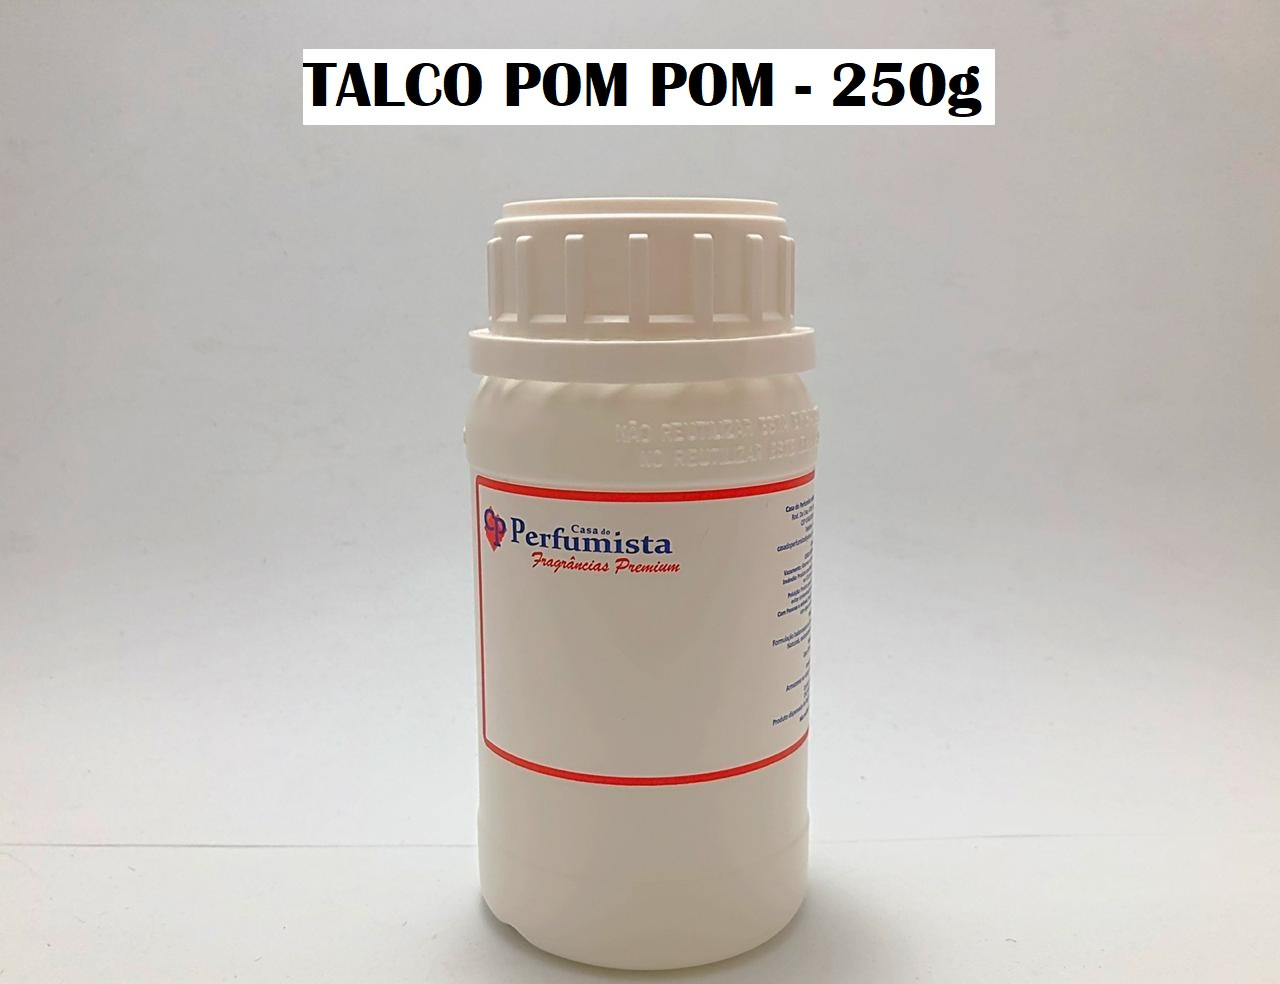 TALCO POM POM - 250g